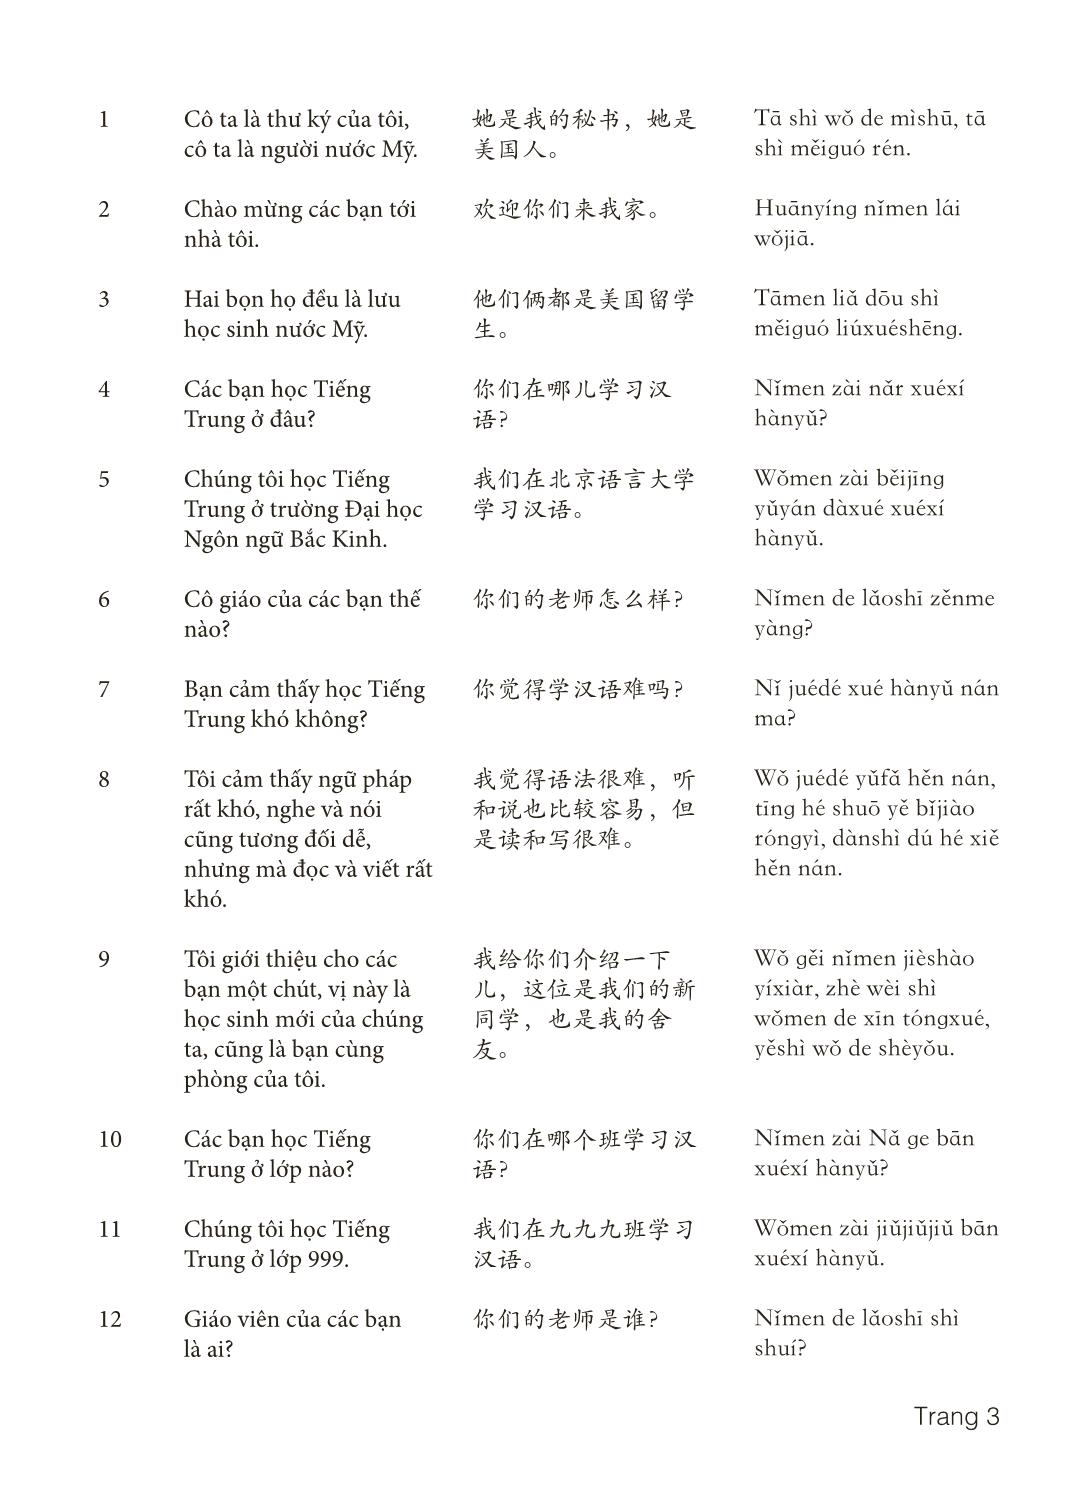 3000 Câu đàm thoại tiếng Hoa - Phần 3 trang 3